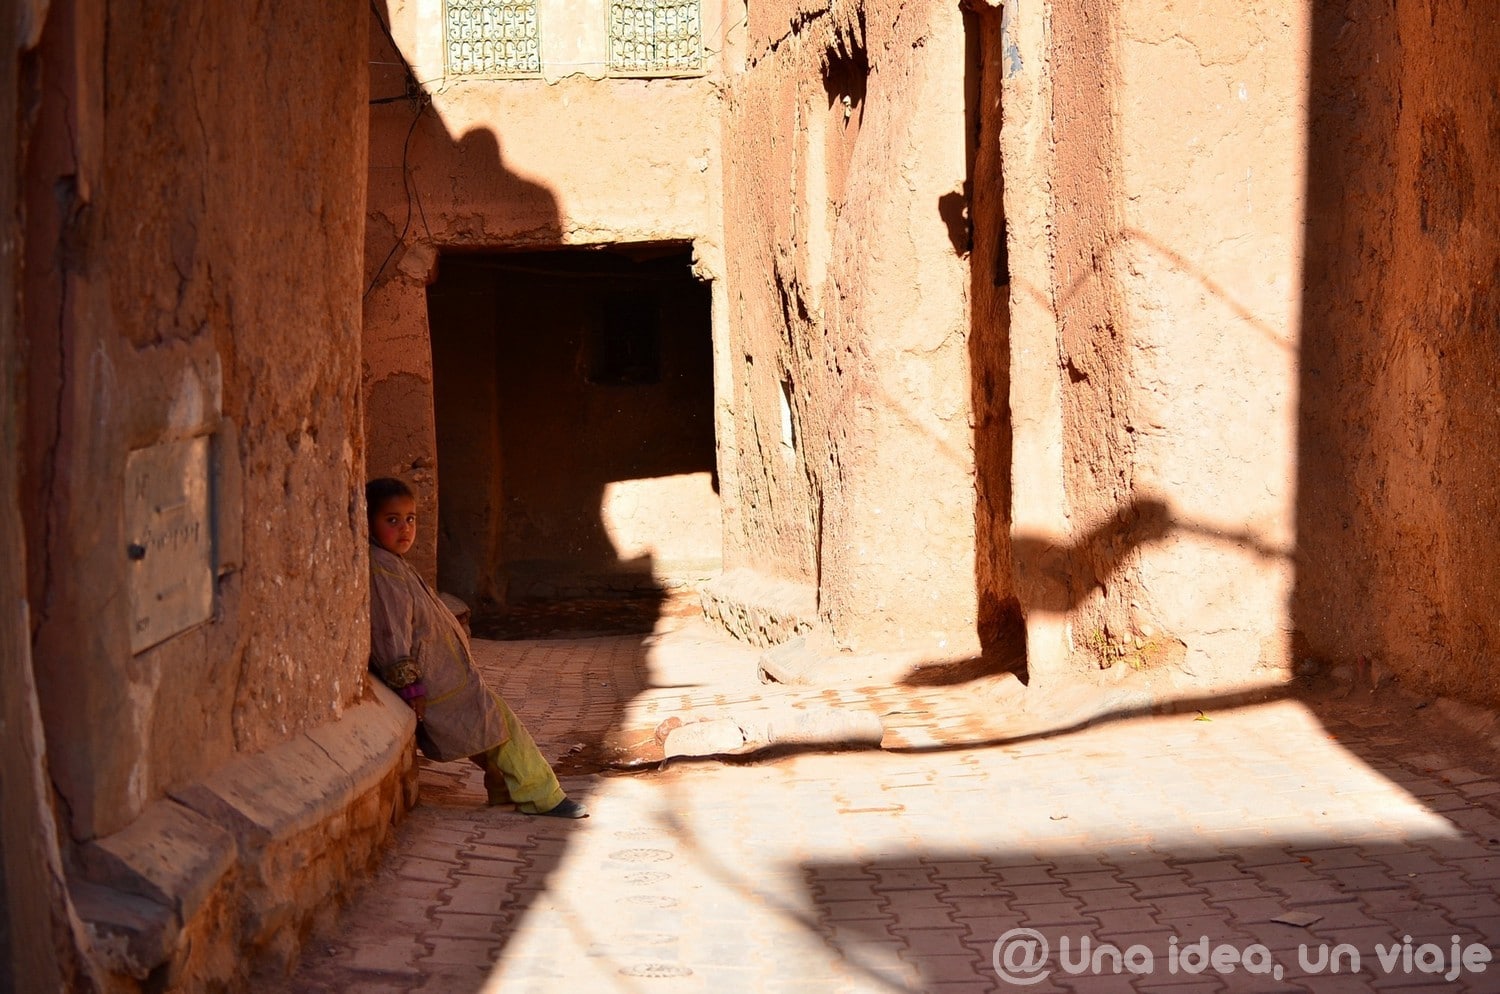 marrakech-marruecos-excursion-ruta-desierto-sahara-unaideaunviaje-12